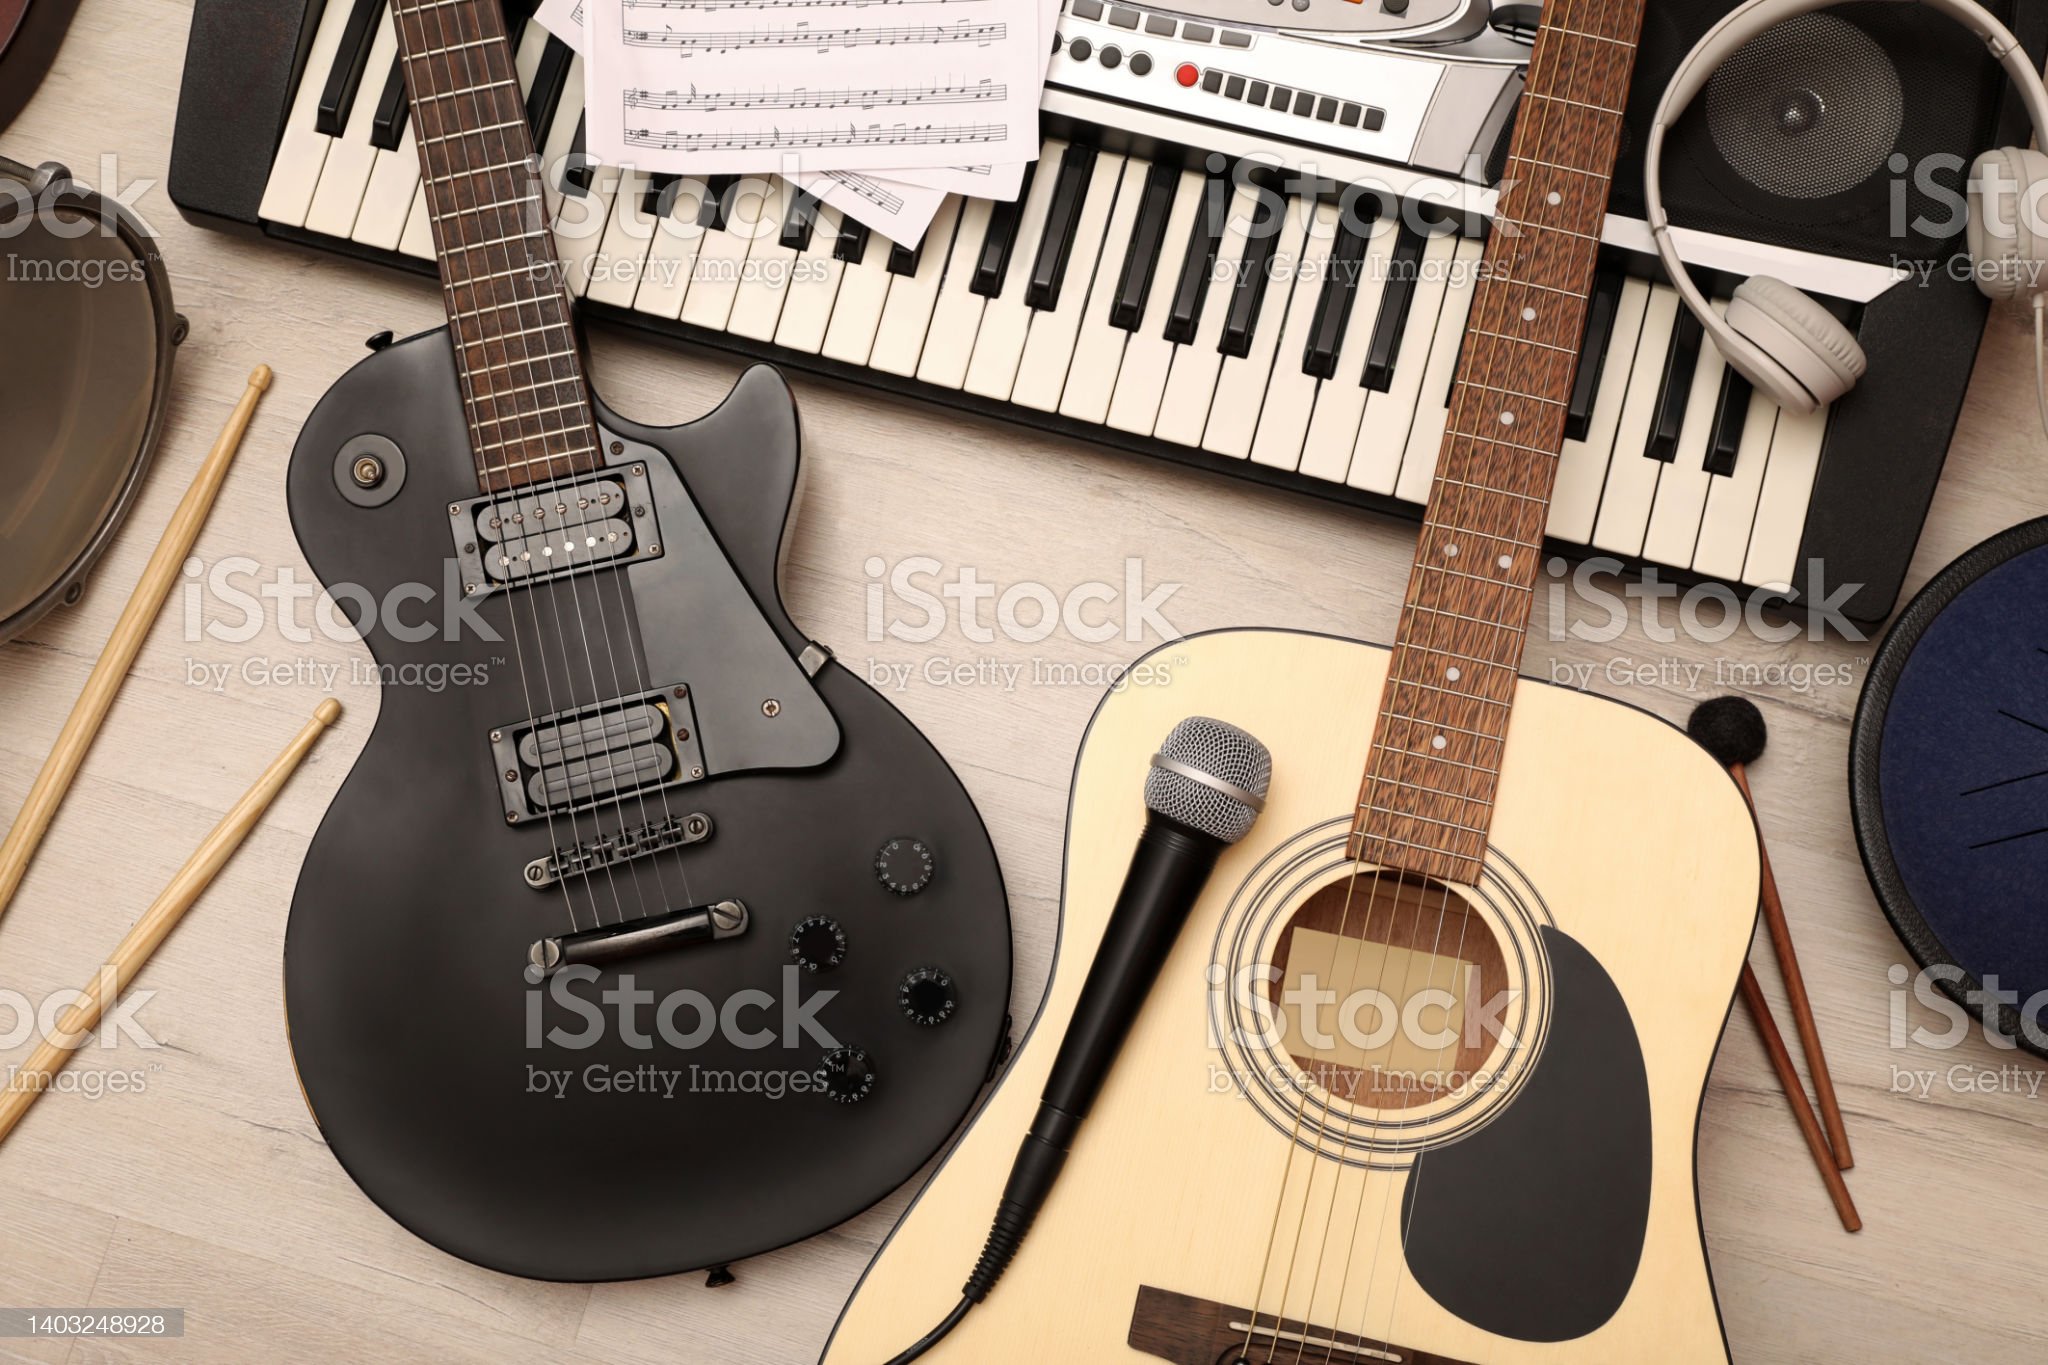 Verschillende muziekinstrumenten, hoofdtelefoon en microfoon op houten ondergrond